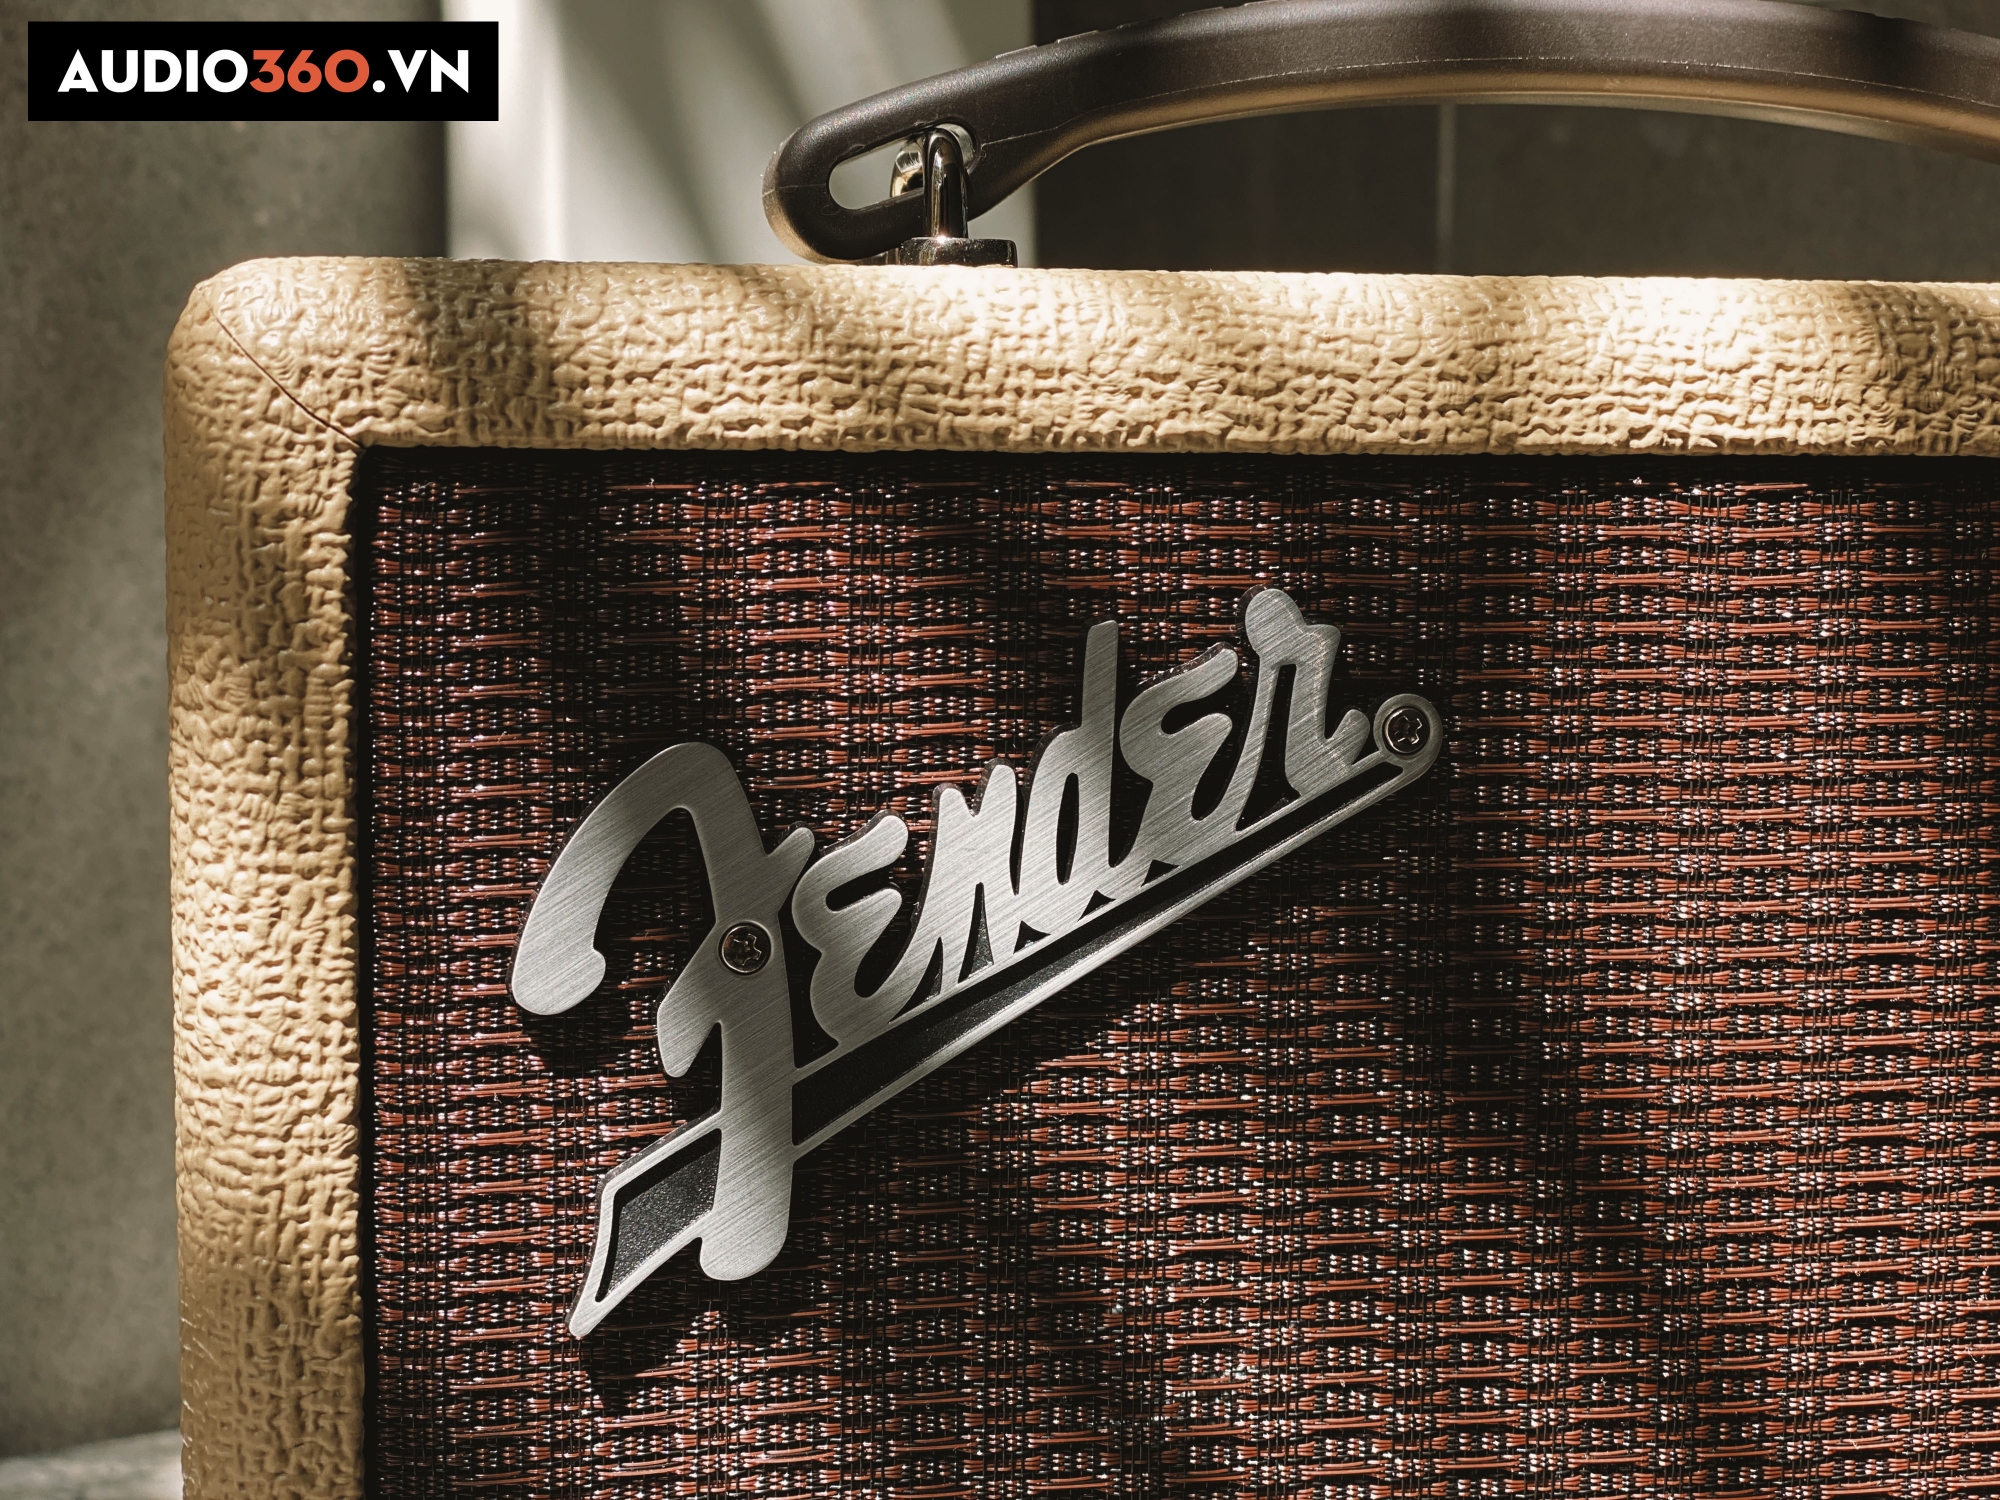 Fender - Hãng loa chinh phục thành công thị trường Audiophiles hàng thập kỷ.